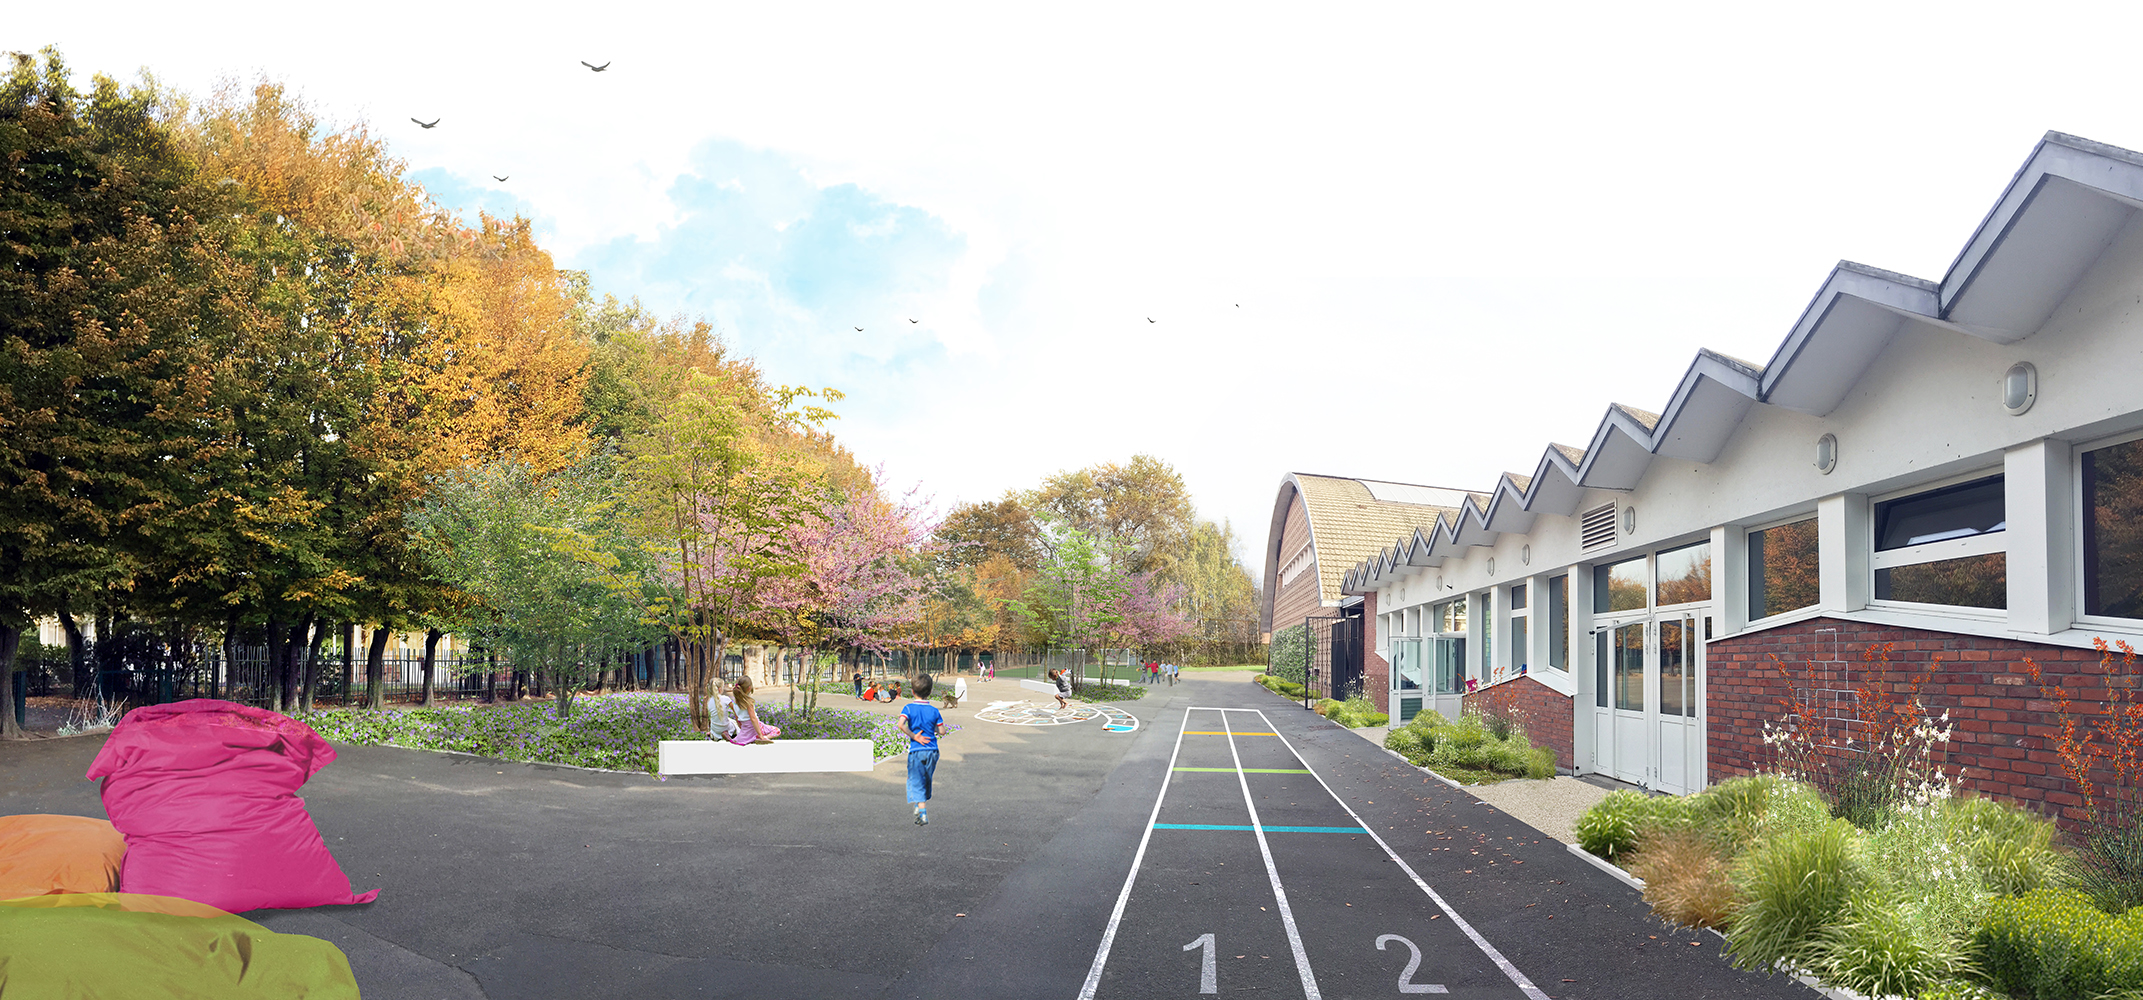 proposition aménagement paysagiste conseil photomontage cour école groupe scolaire Concorde Mons-en-Baroeul